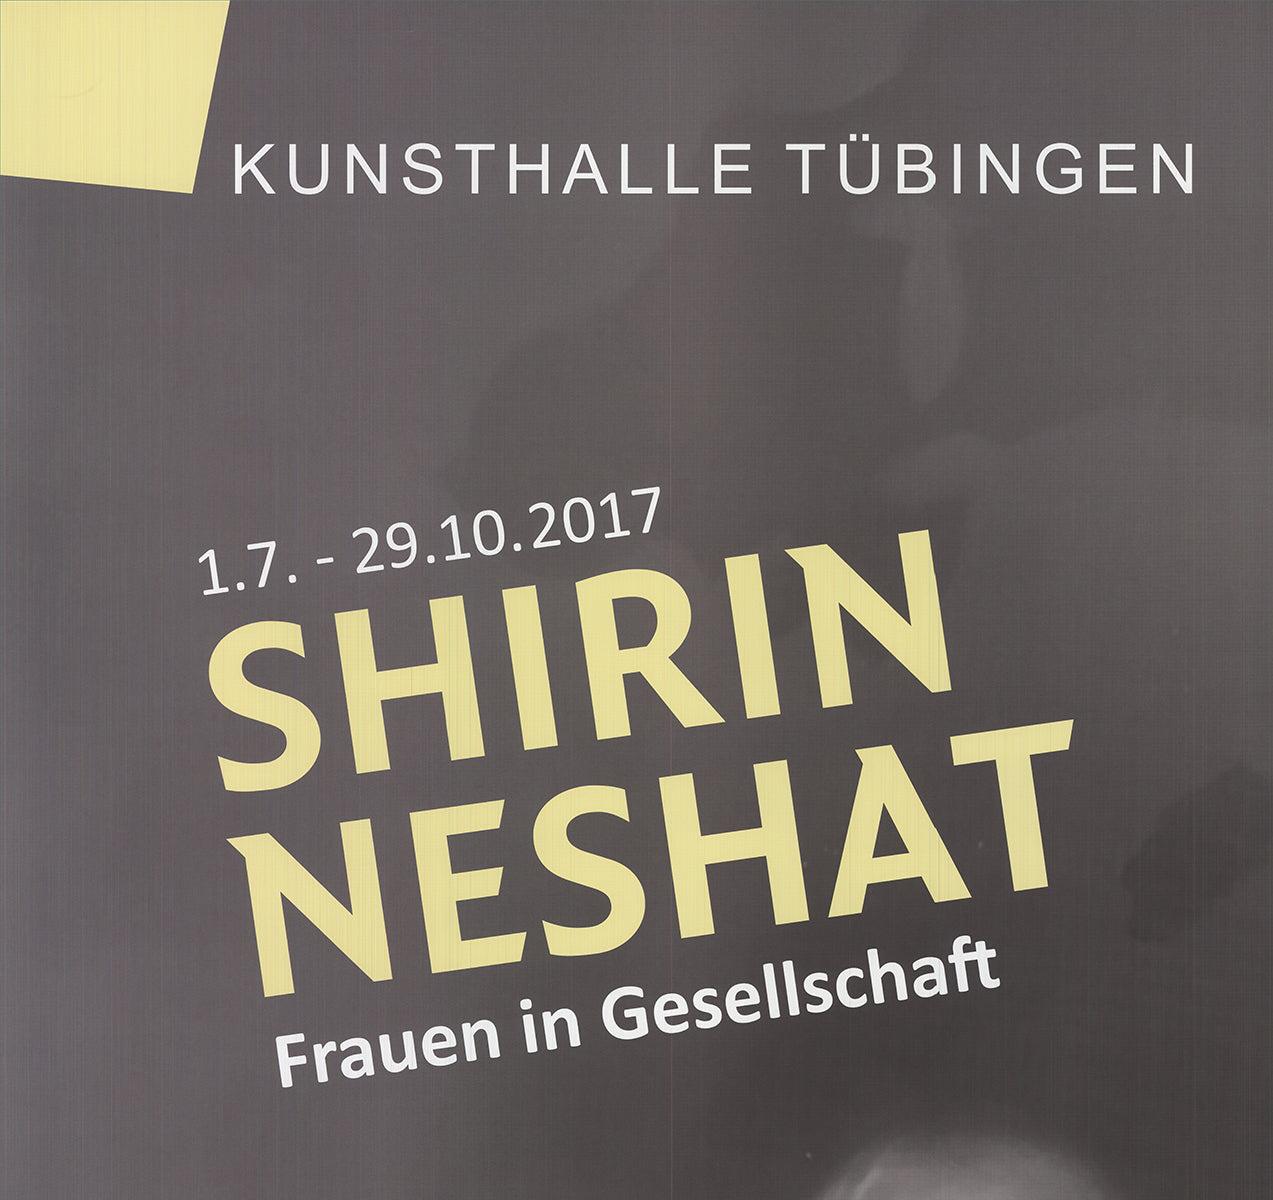 Shirin Neshat 